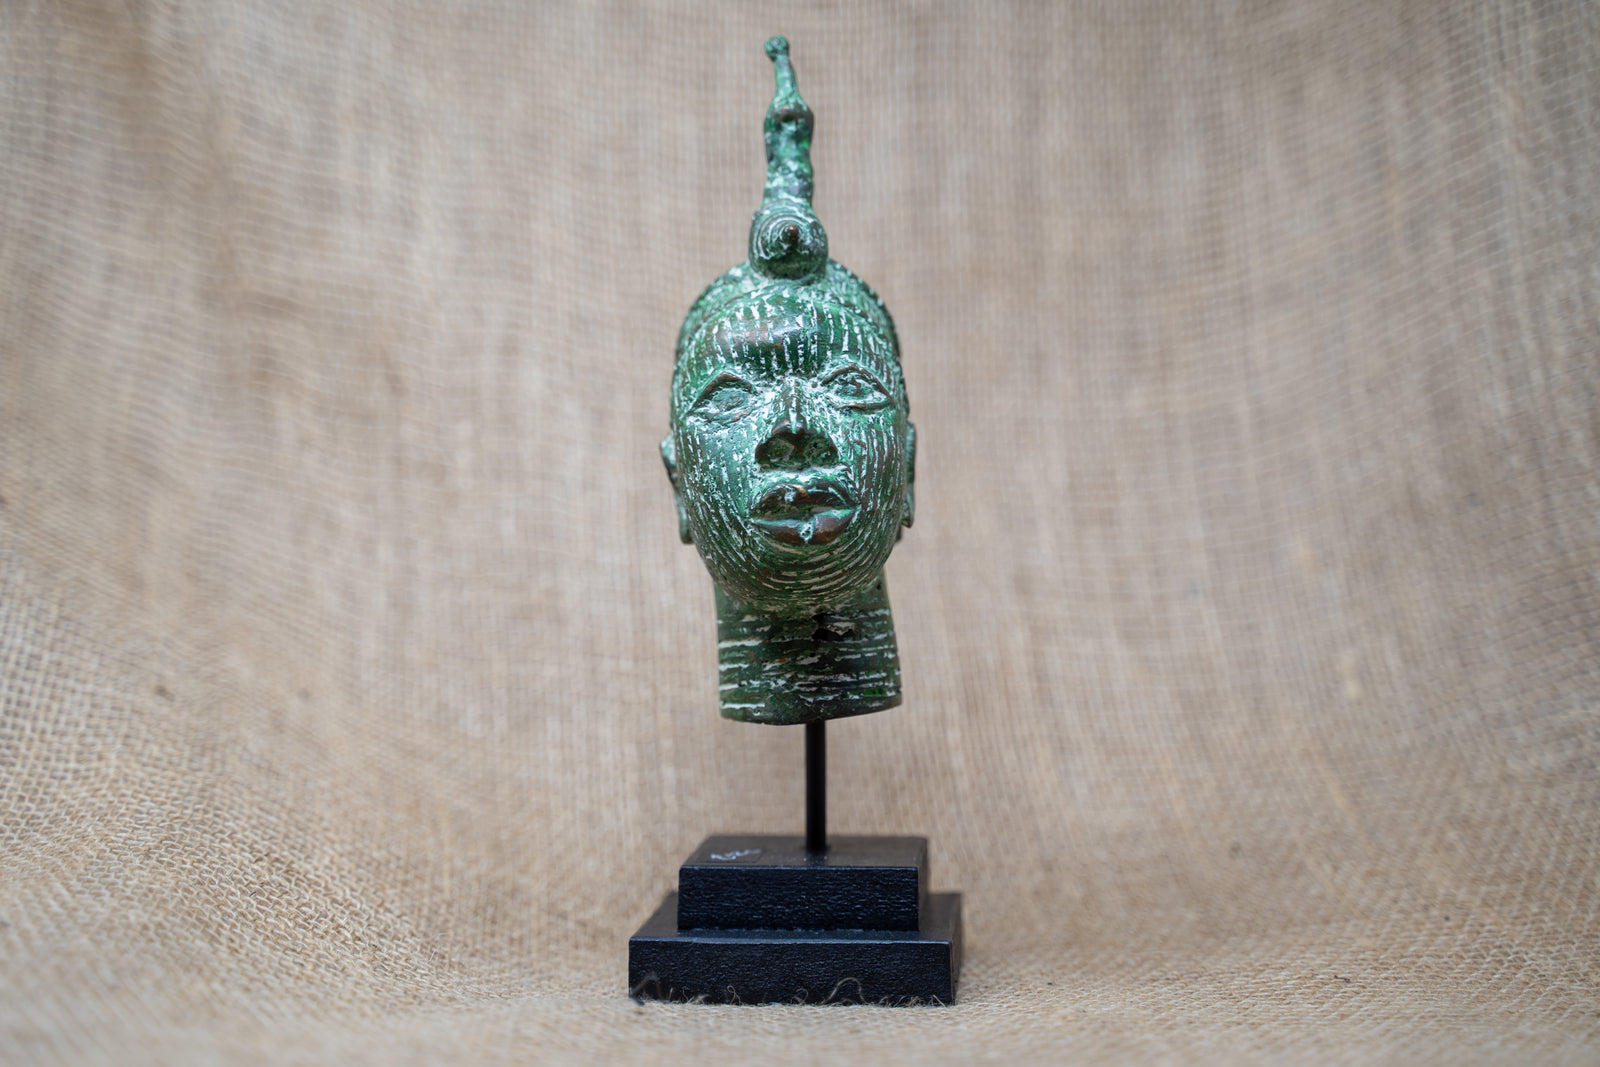 Benin Bronze Head - 37.4